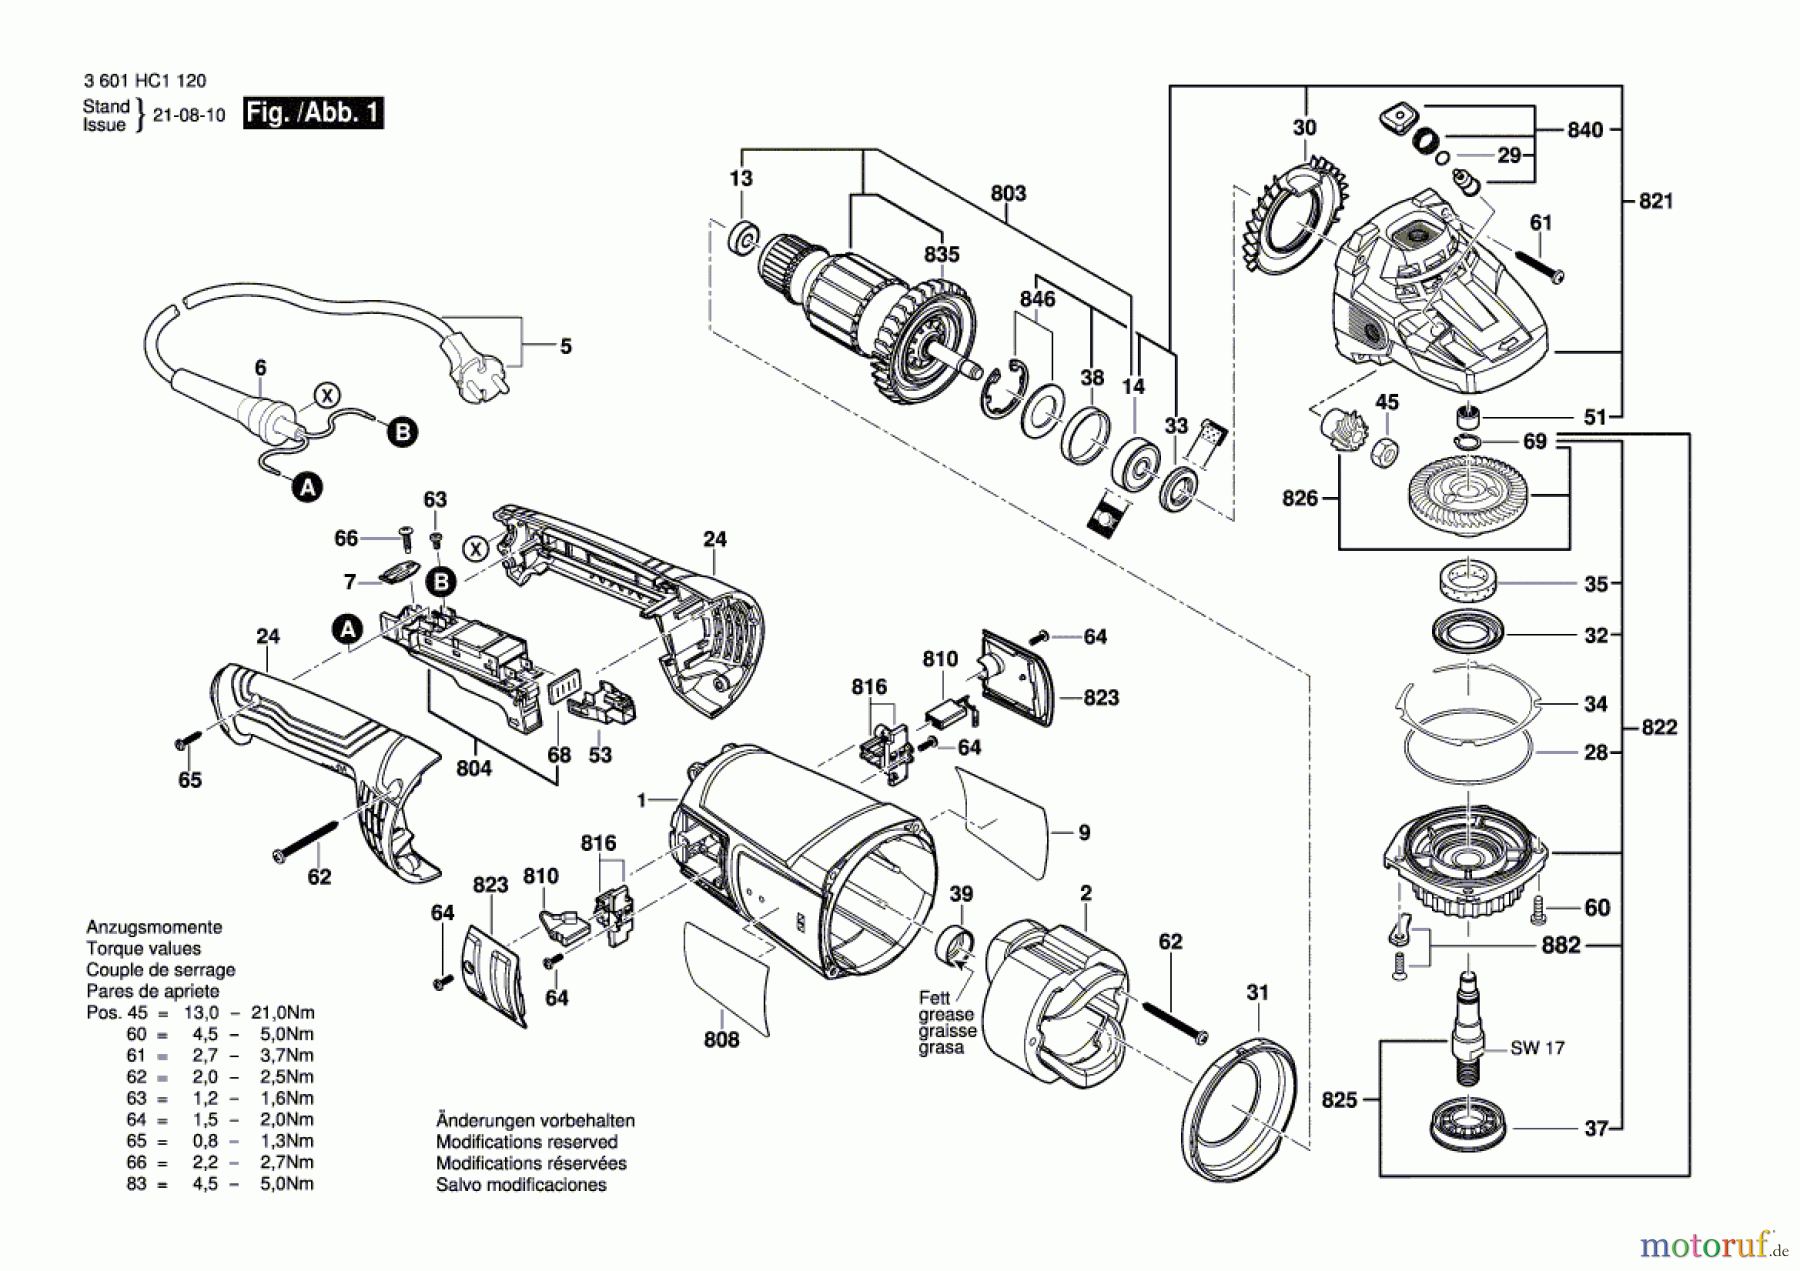  Bosch Werkzeug Winkelschleifer GWS 2200 Seite 1